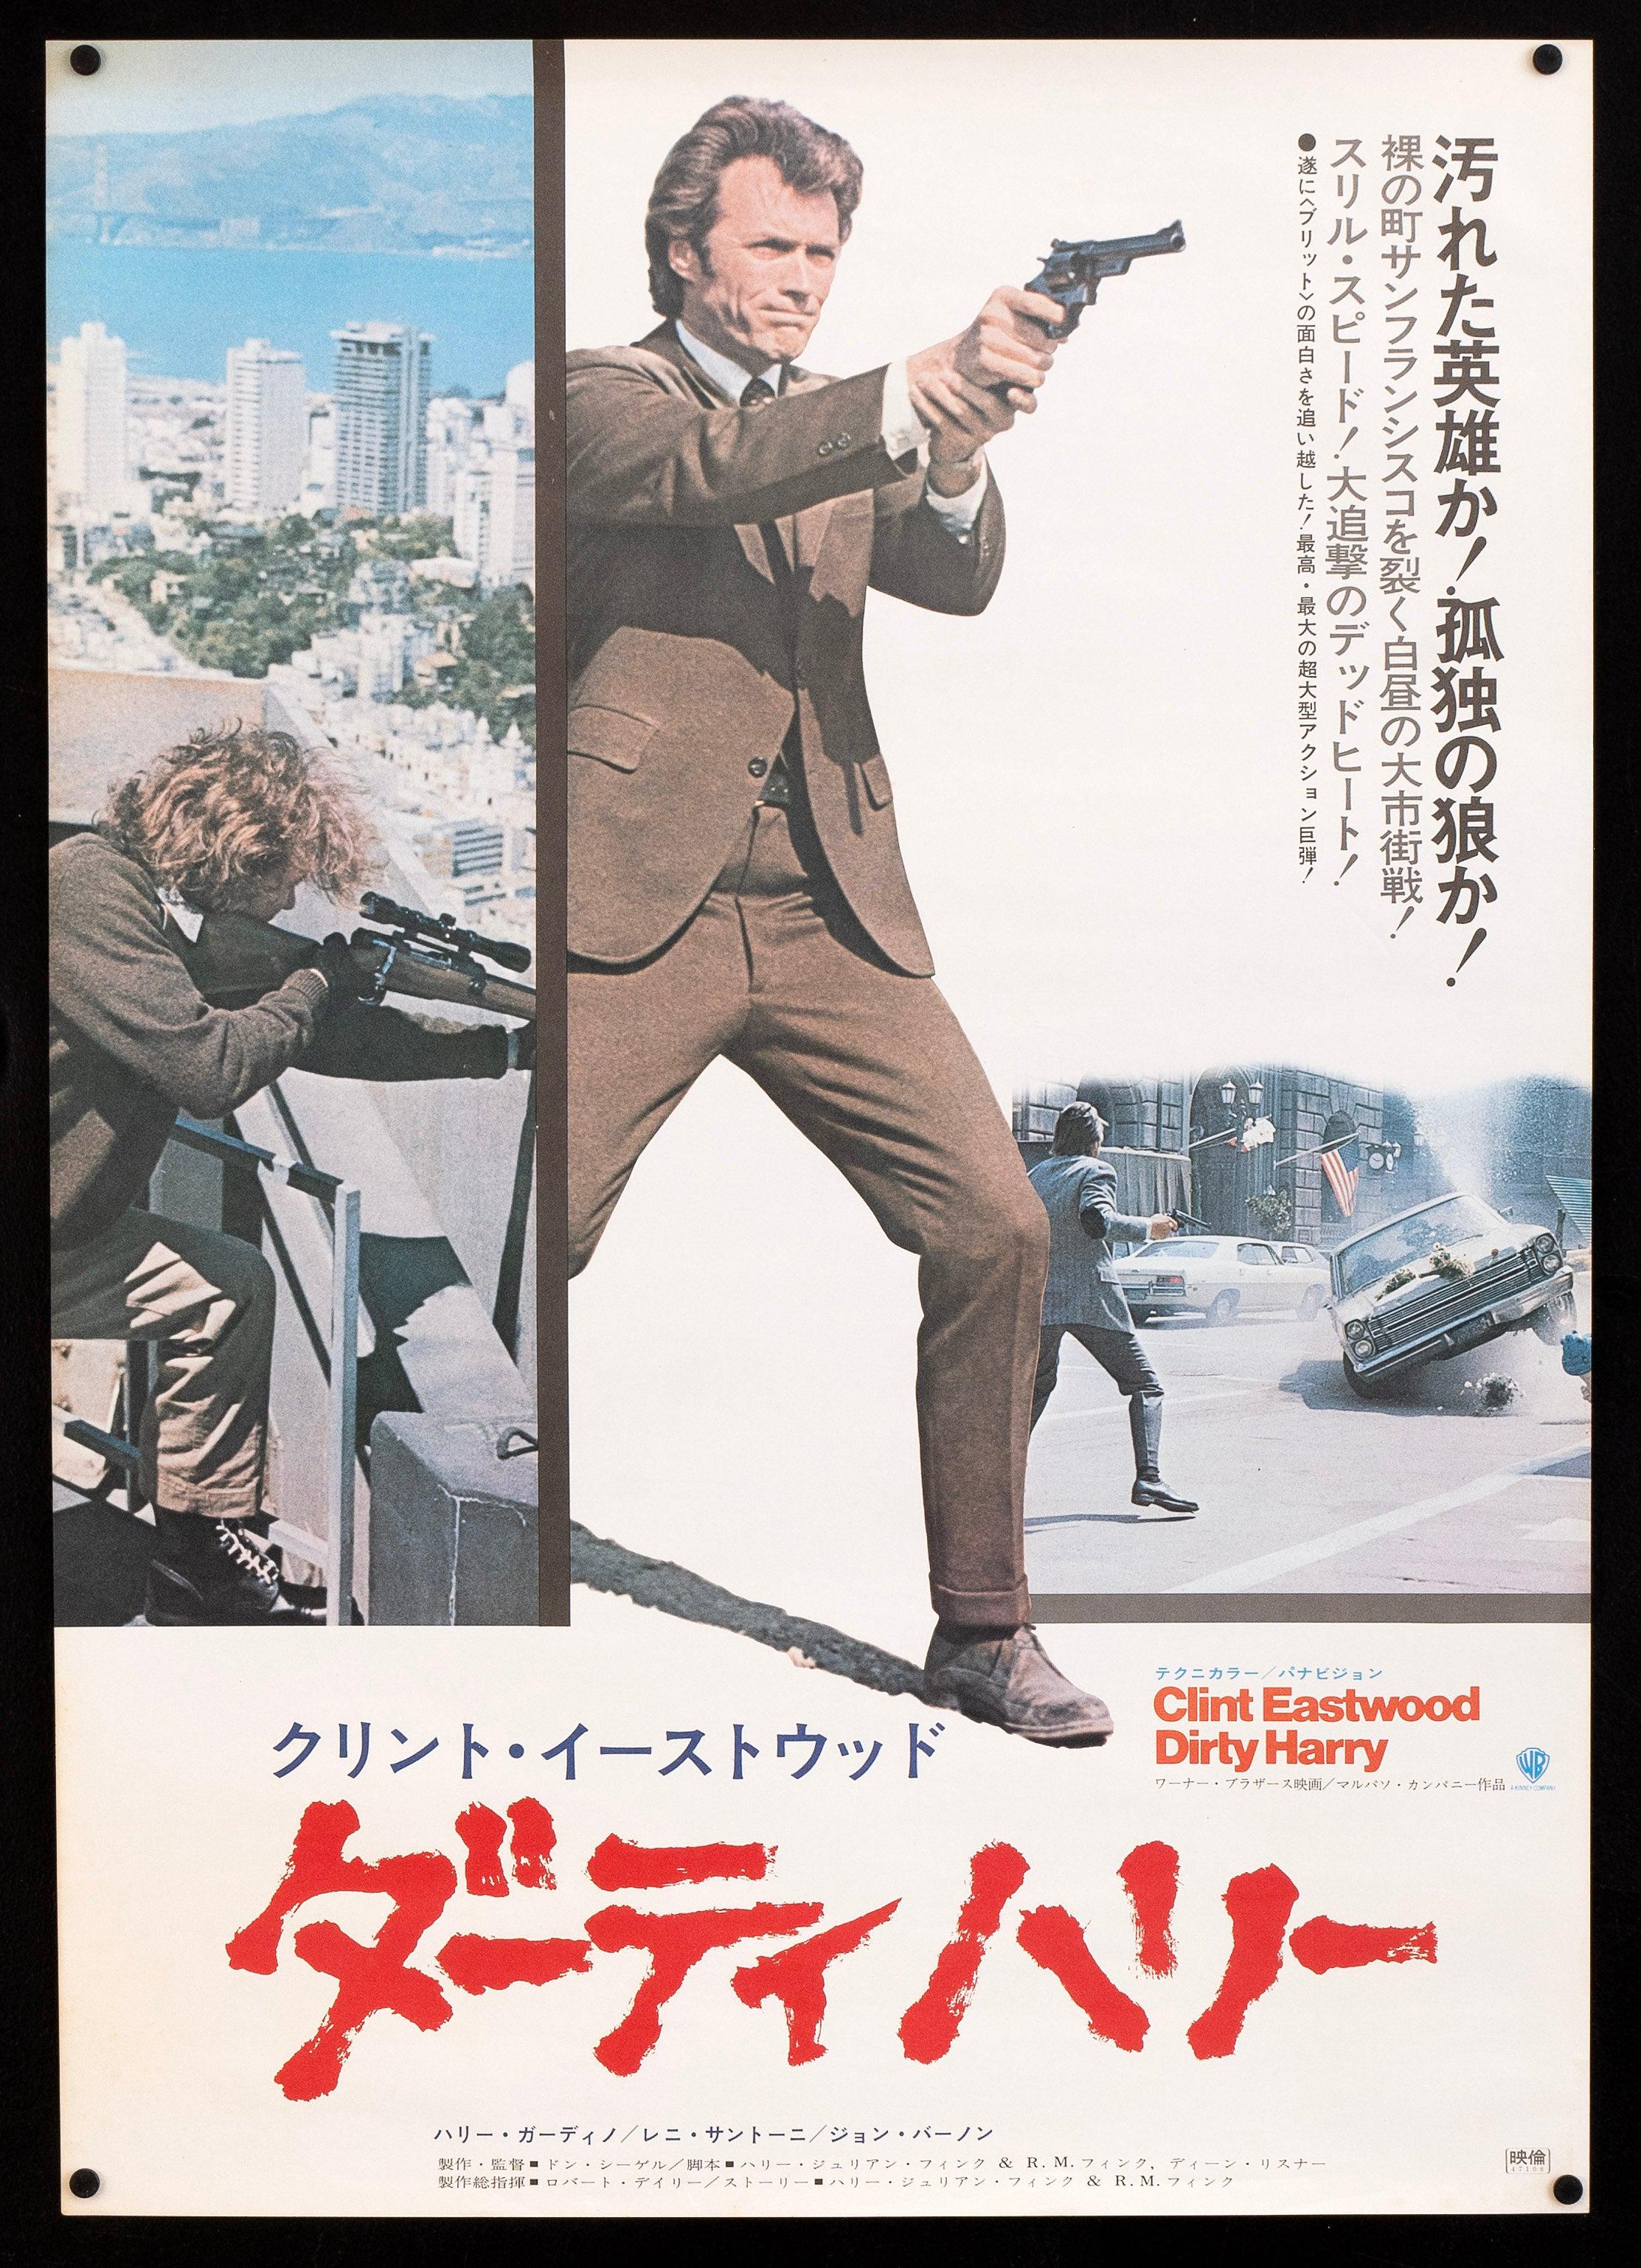 http://filmartgallery.com/cdn/shop/files/Dirty-Harry-Vintage-Movie-Poster-Original-Japanese-1-panel-20x29-3522.jpg?v=1697086992